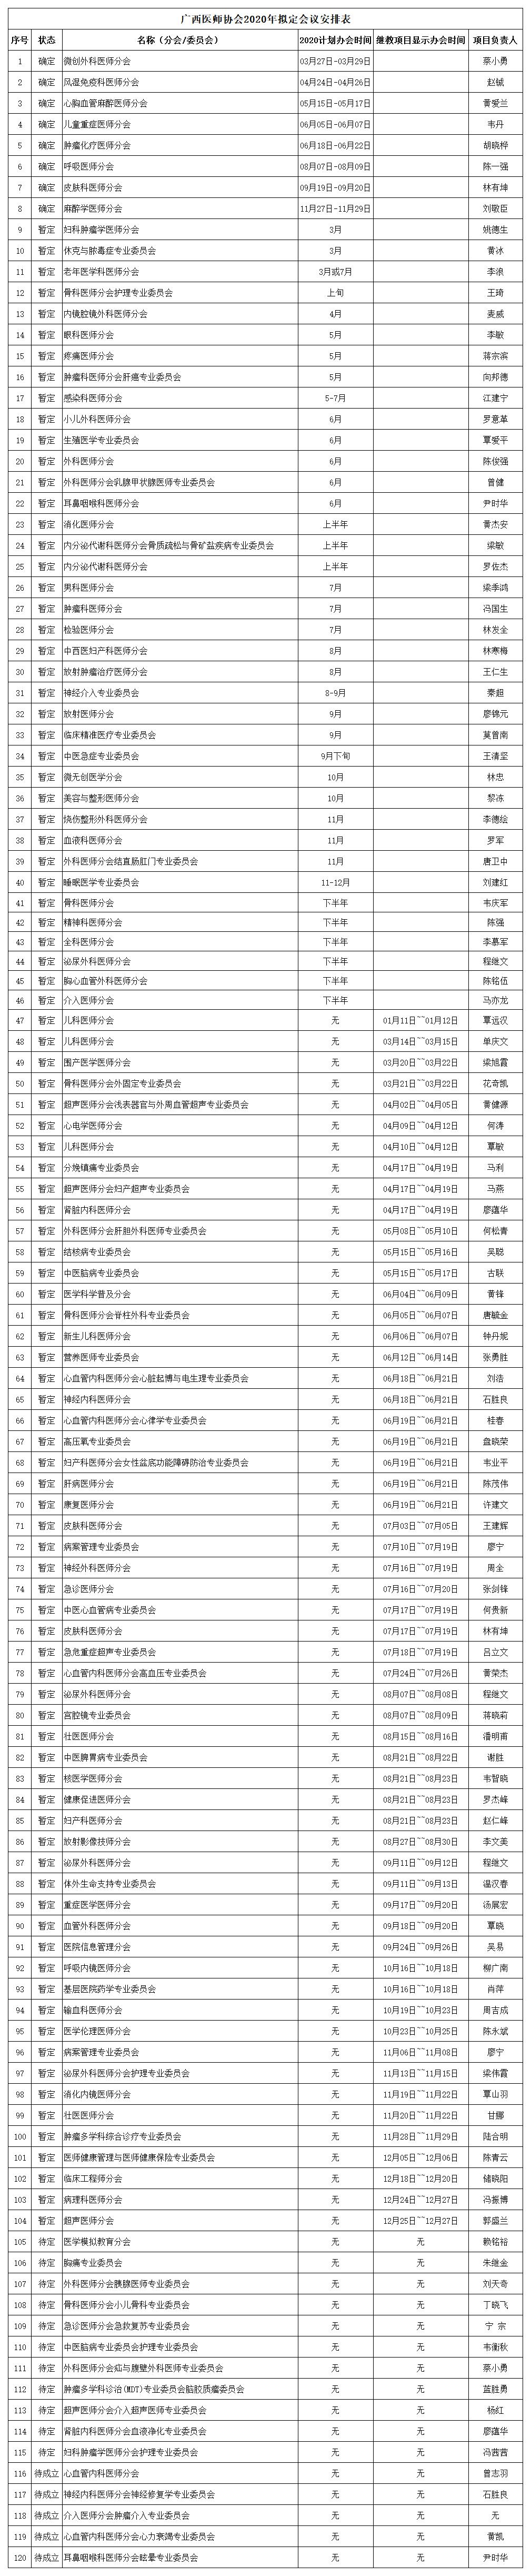 广西医师协会2020年会议计划安排表.jpg